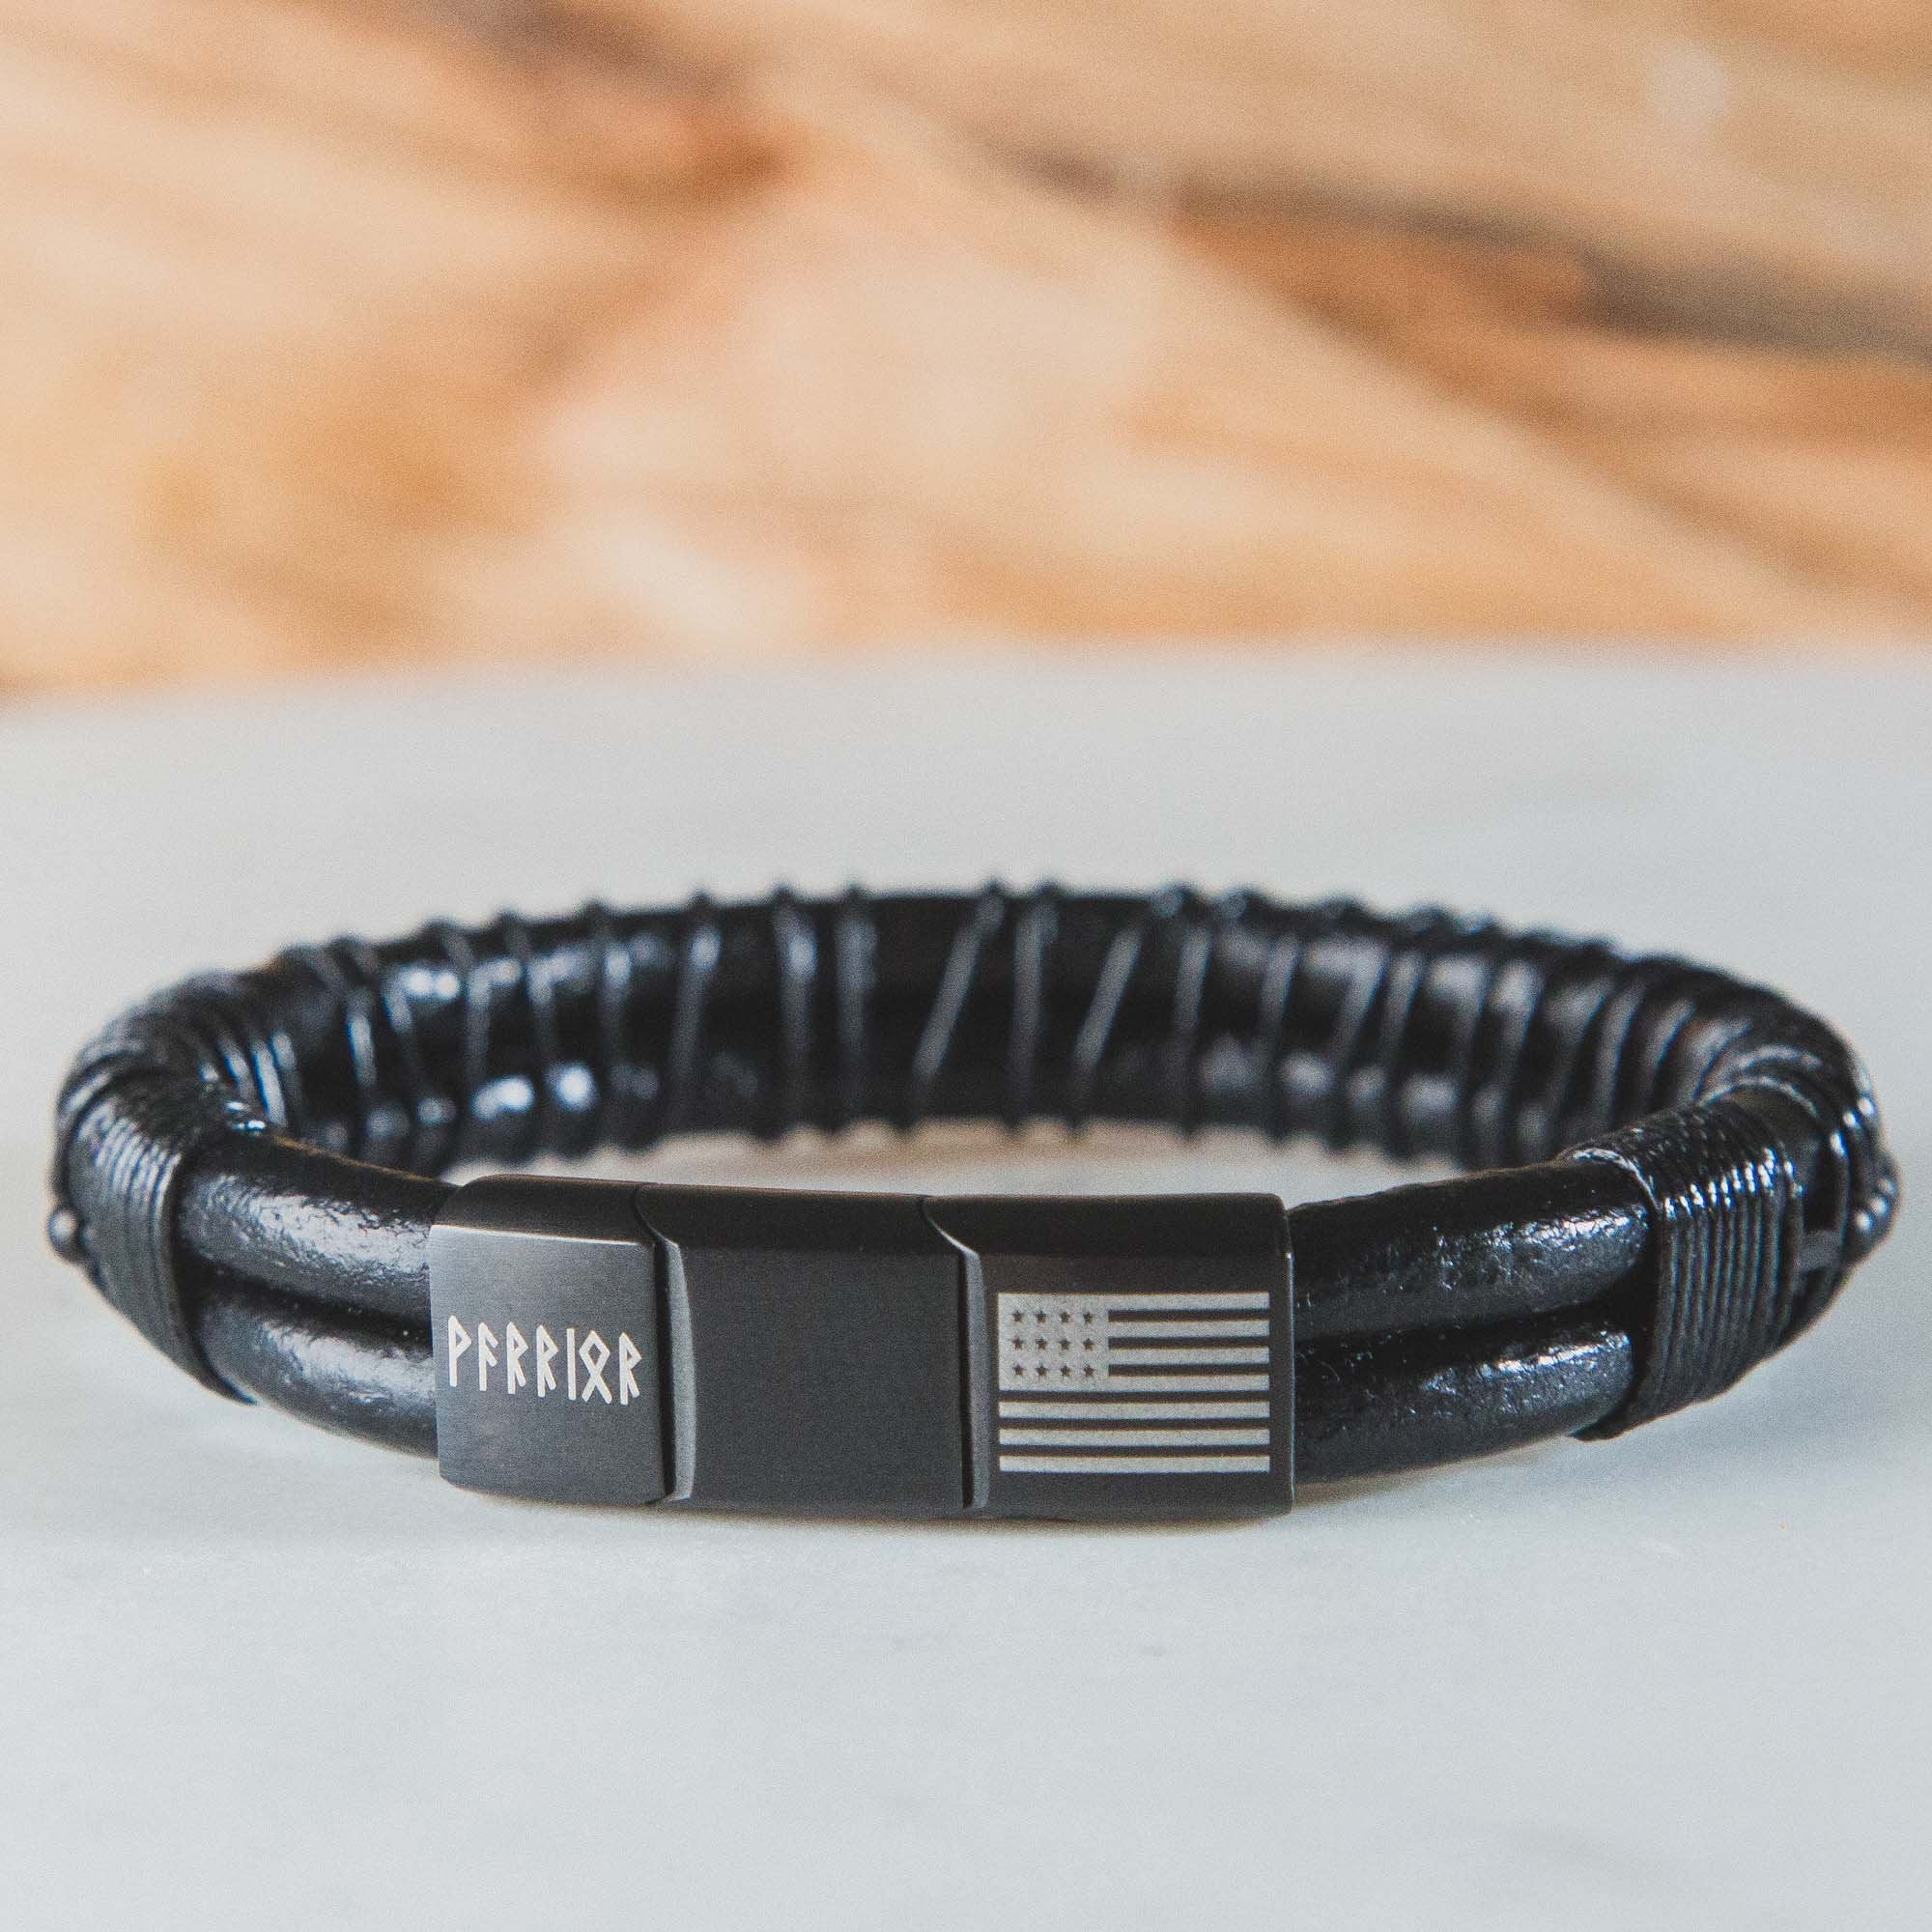 Valhalla Warrior Morse Code ‘Never Surrender’ Leather Bracelet: Helps Pair Veterans With A Service Dog Or Shelter Dog